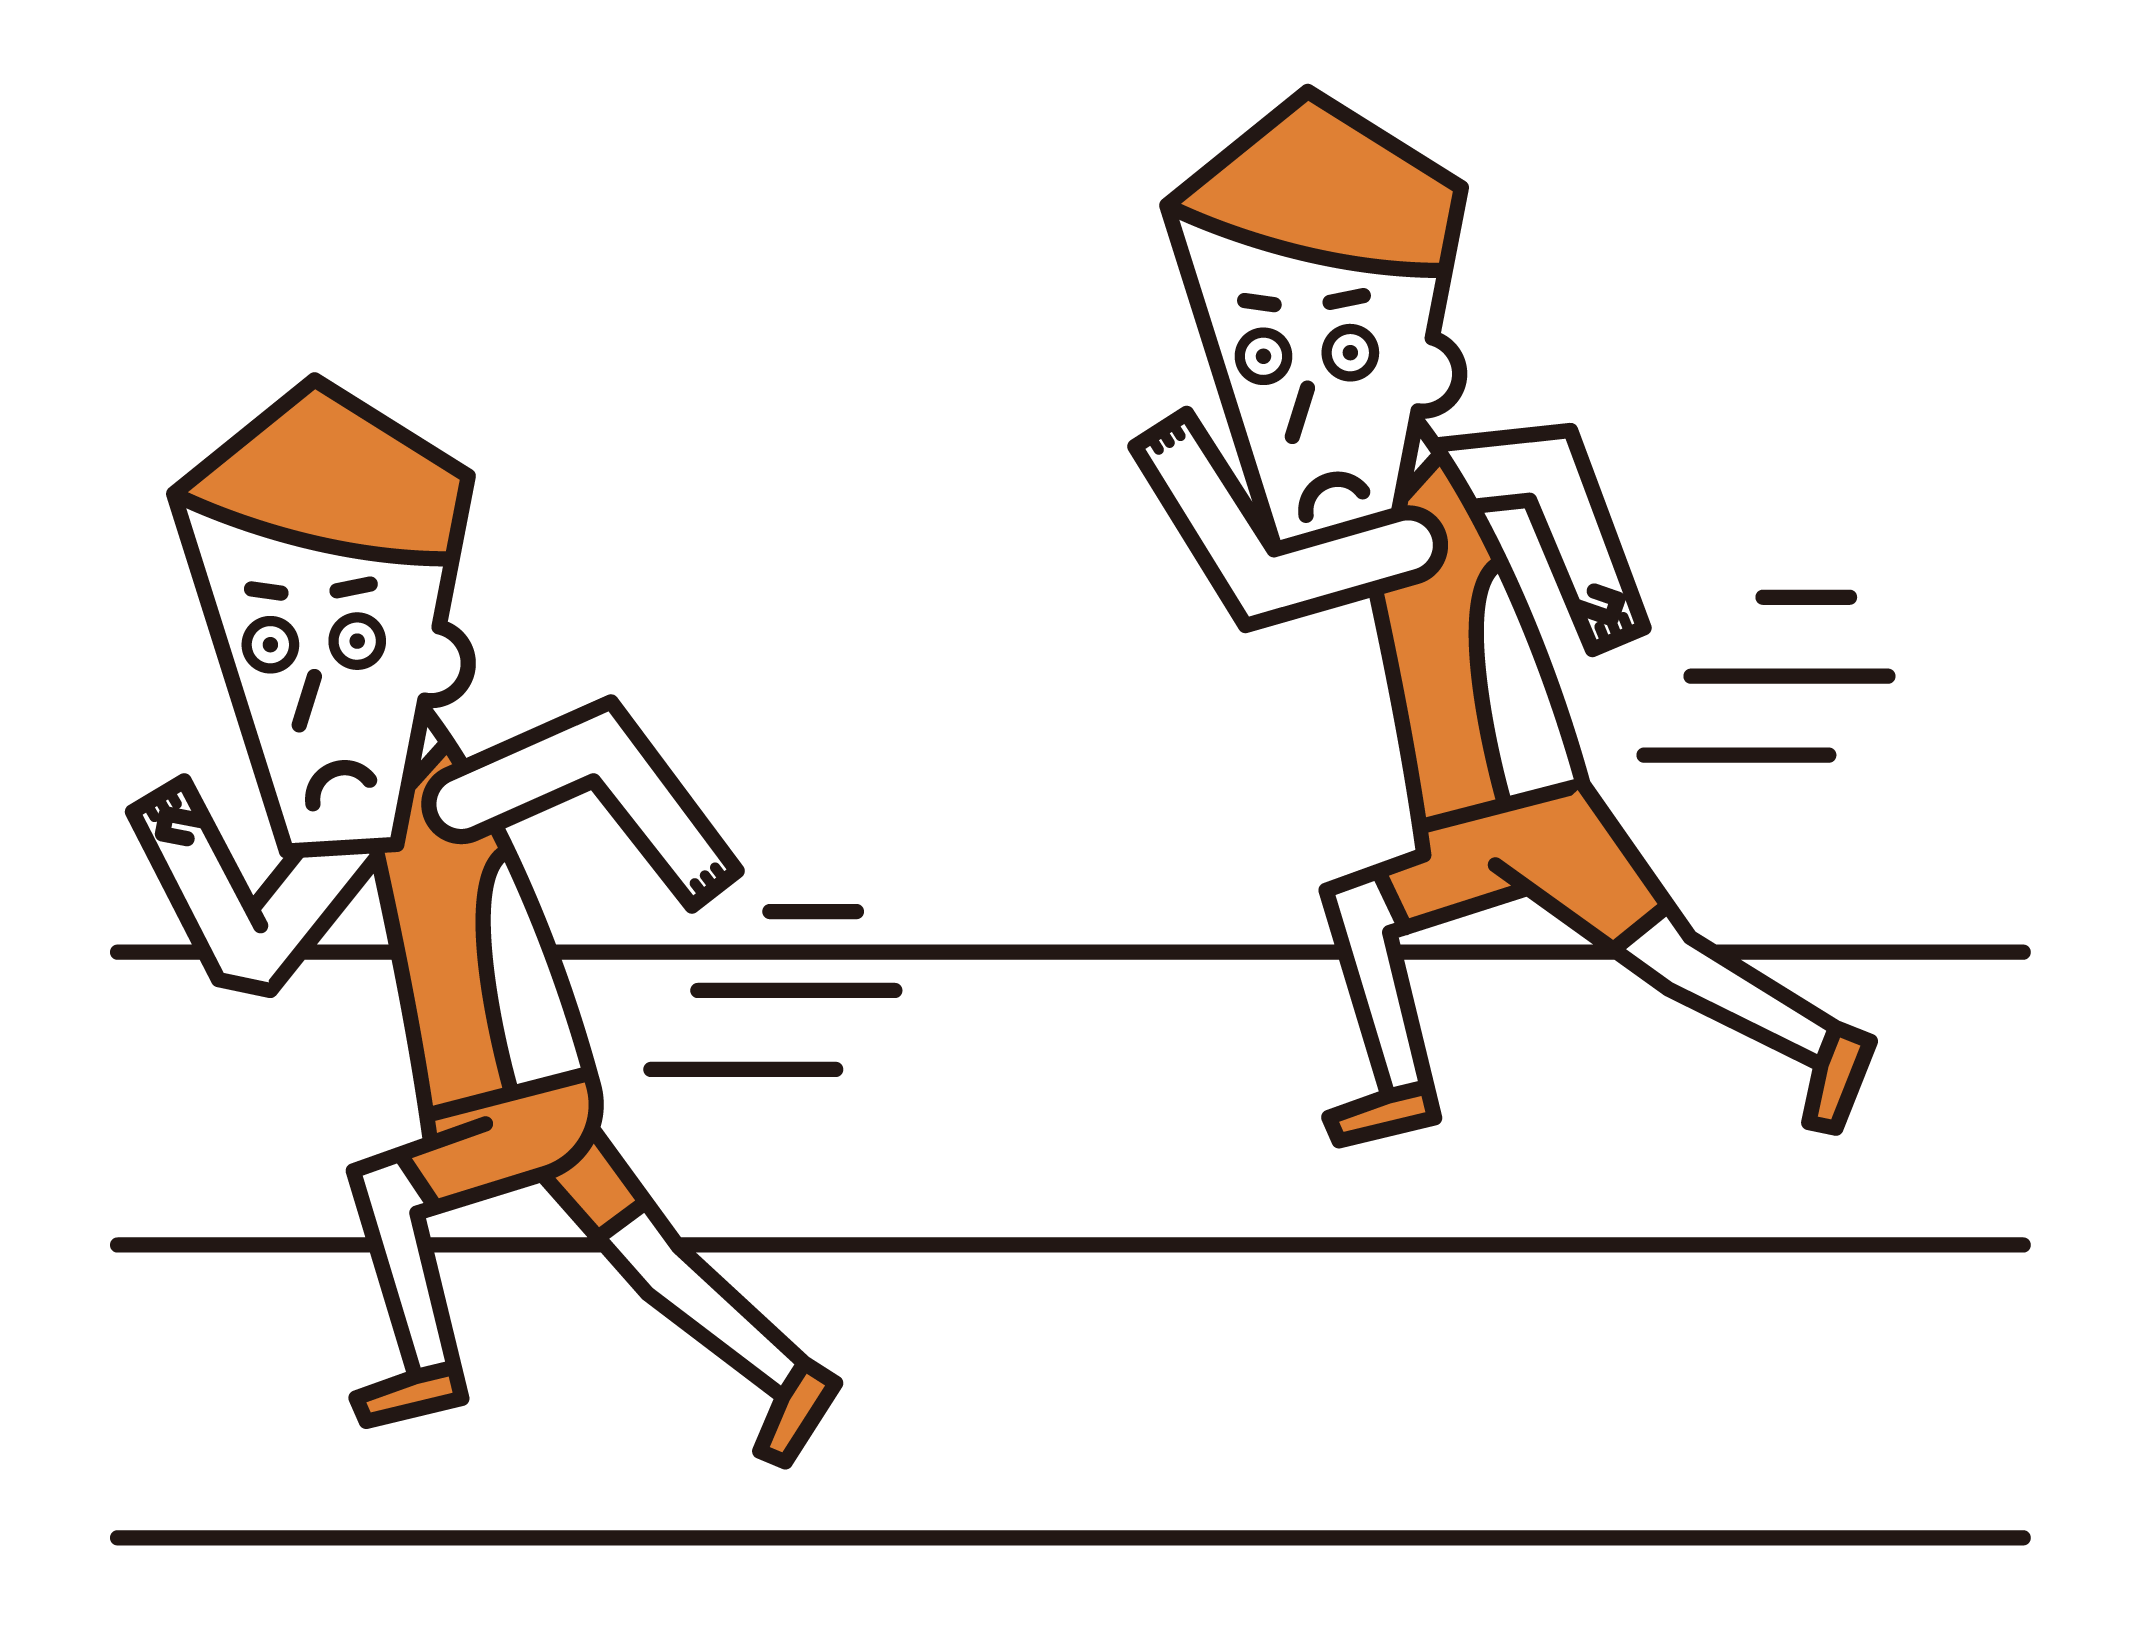 短距離走で競争する選手たち（男性）のイラスト